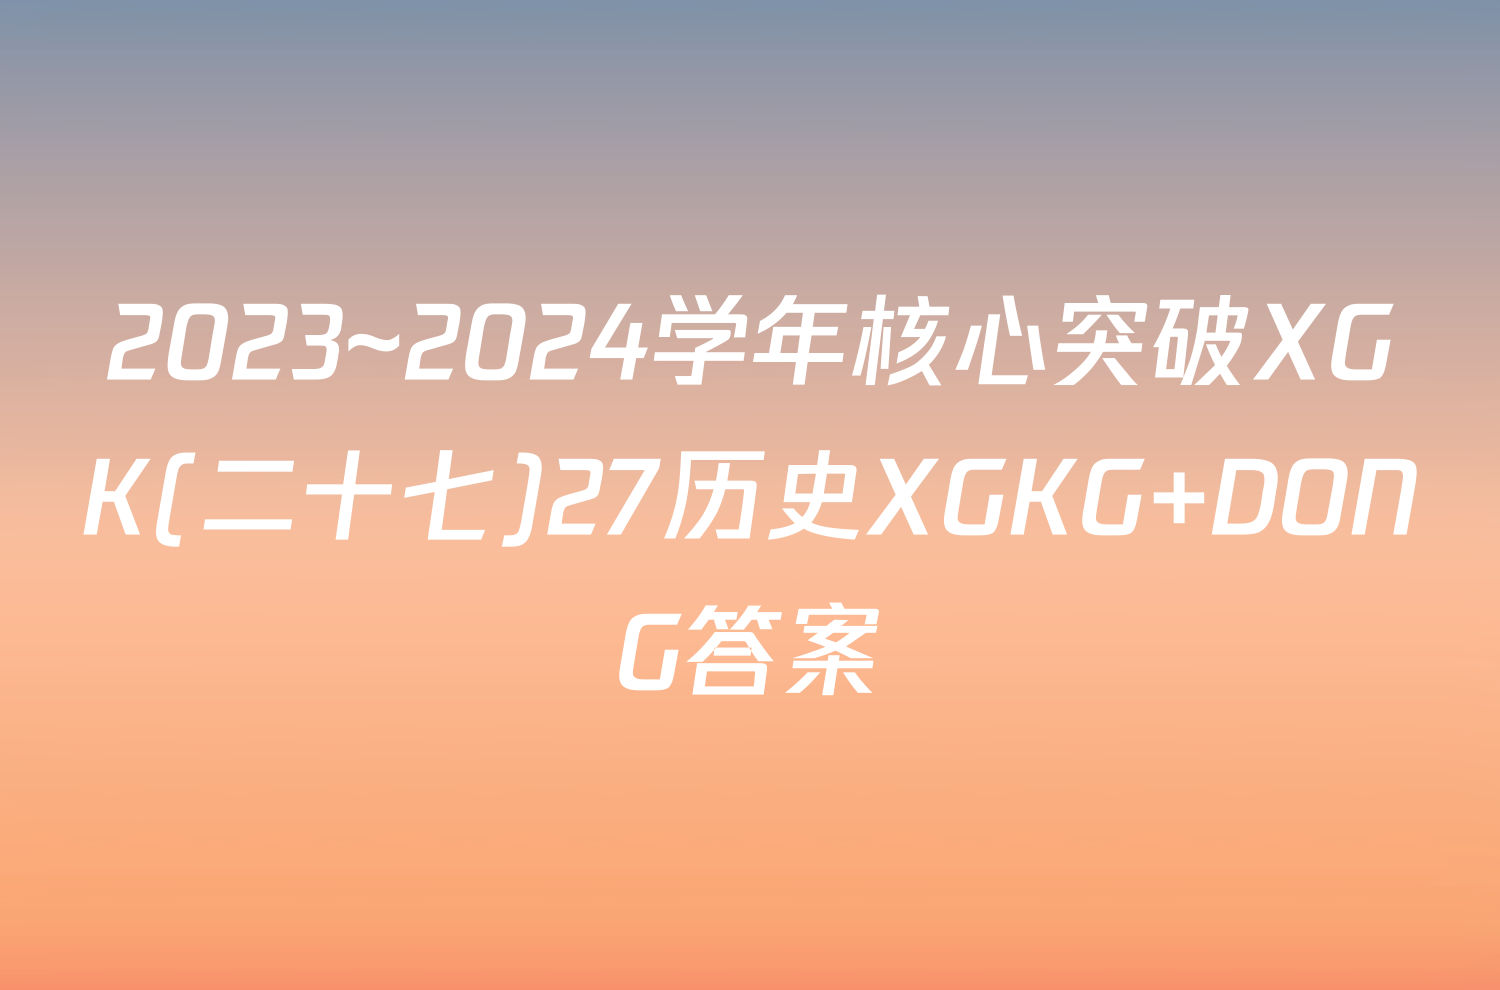 2023~2024学年核心突破XGK(二十七)27历史XGKG DONG答案